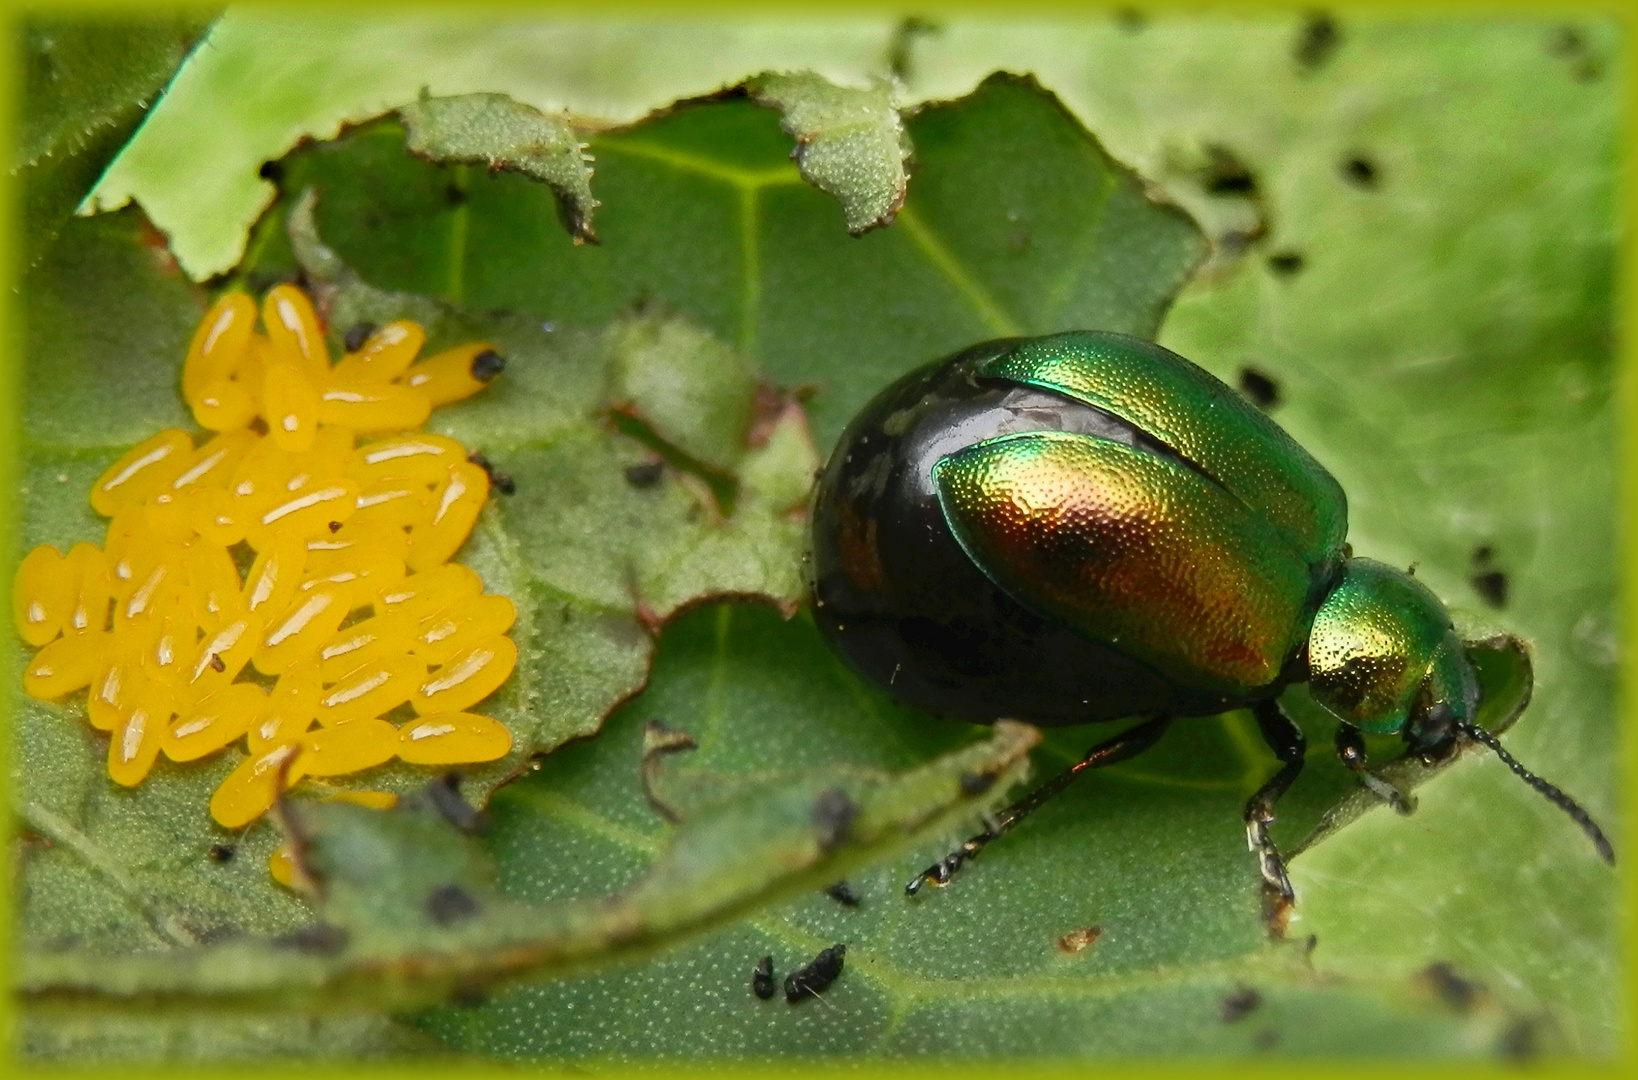 Grüner Sauerampferkäfer (Gastrophysa viridula) nach der Eiablage